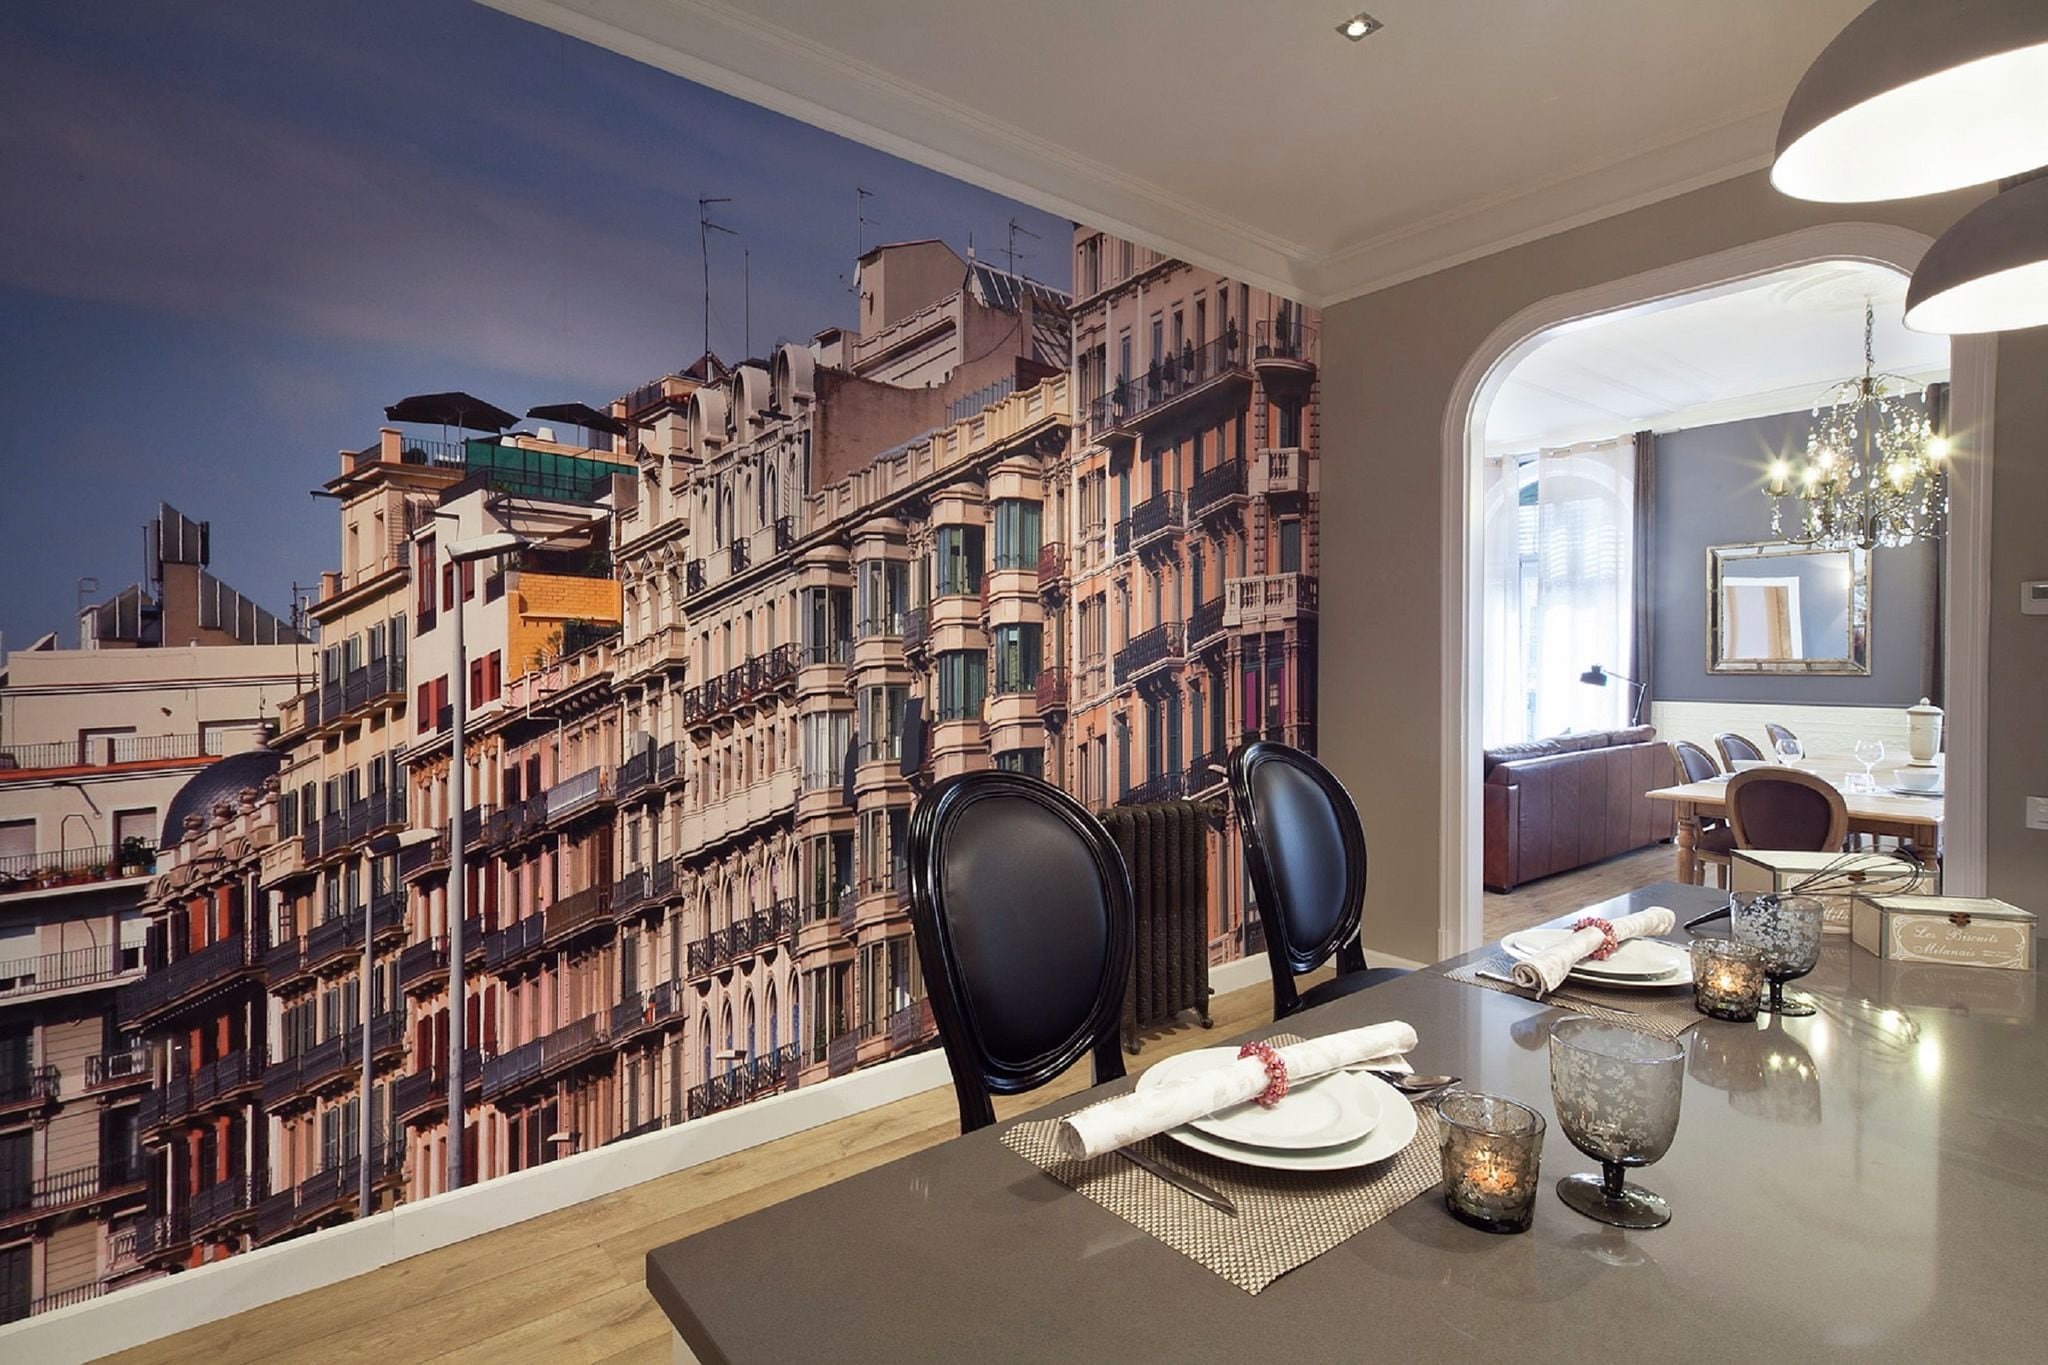 Exclusief appartement voor 7 personen in karakteristieke gebied van Barcelona